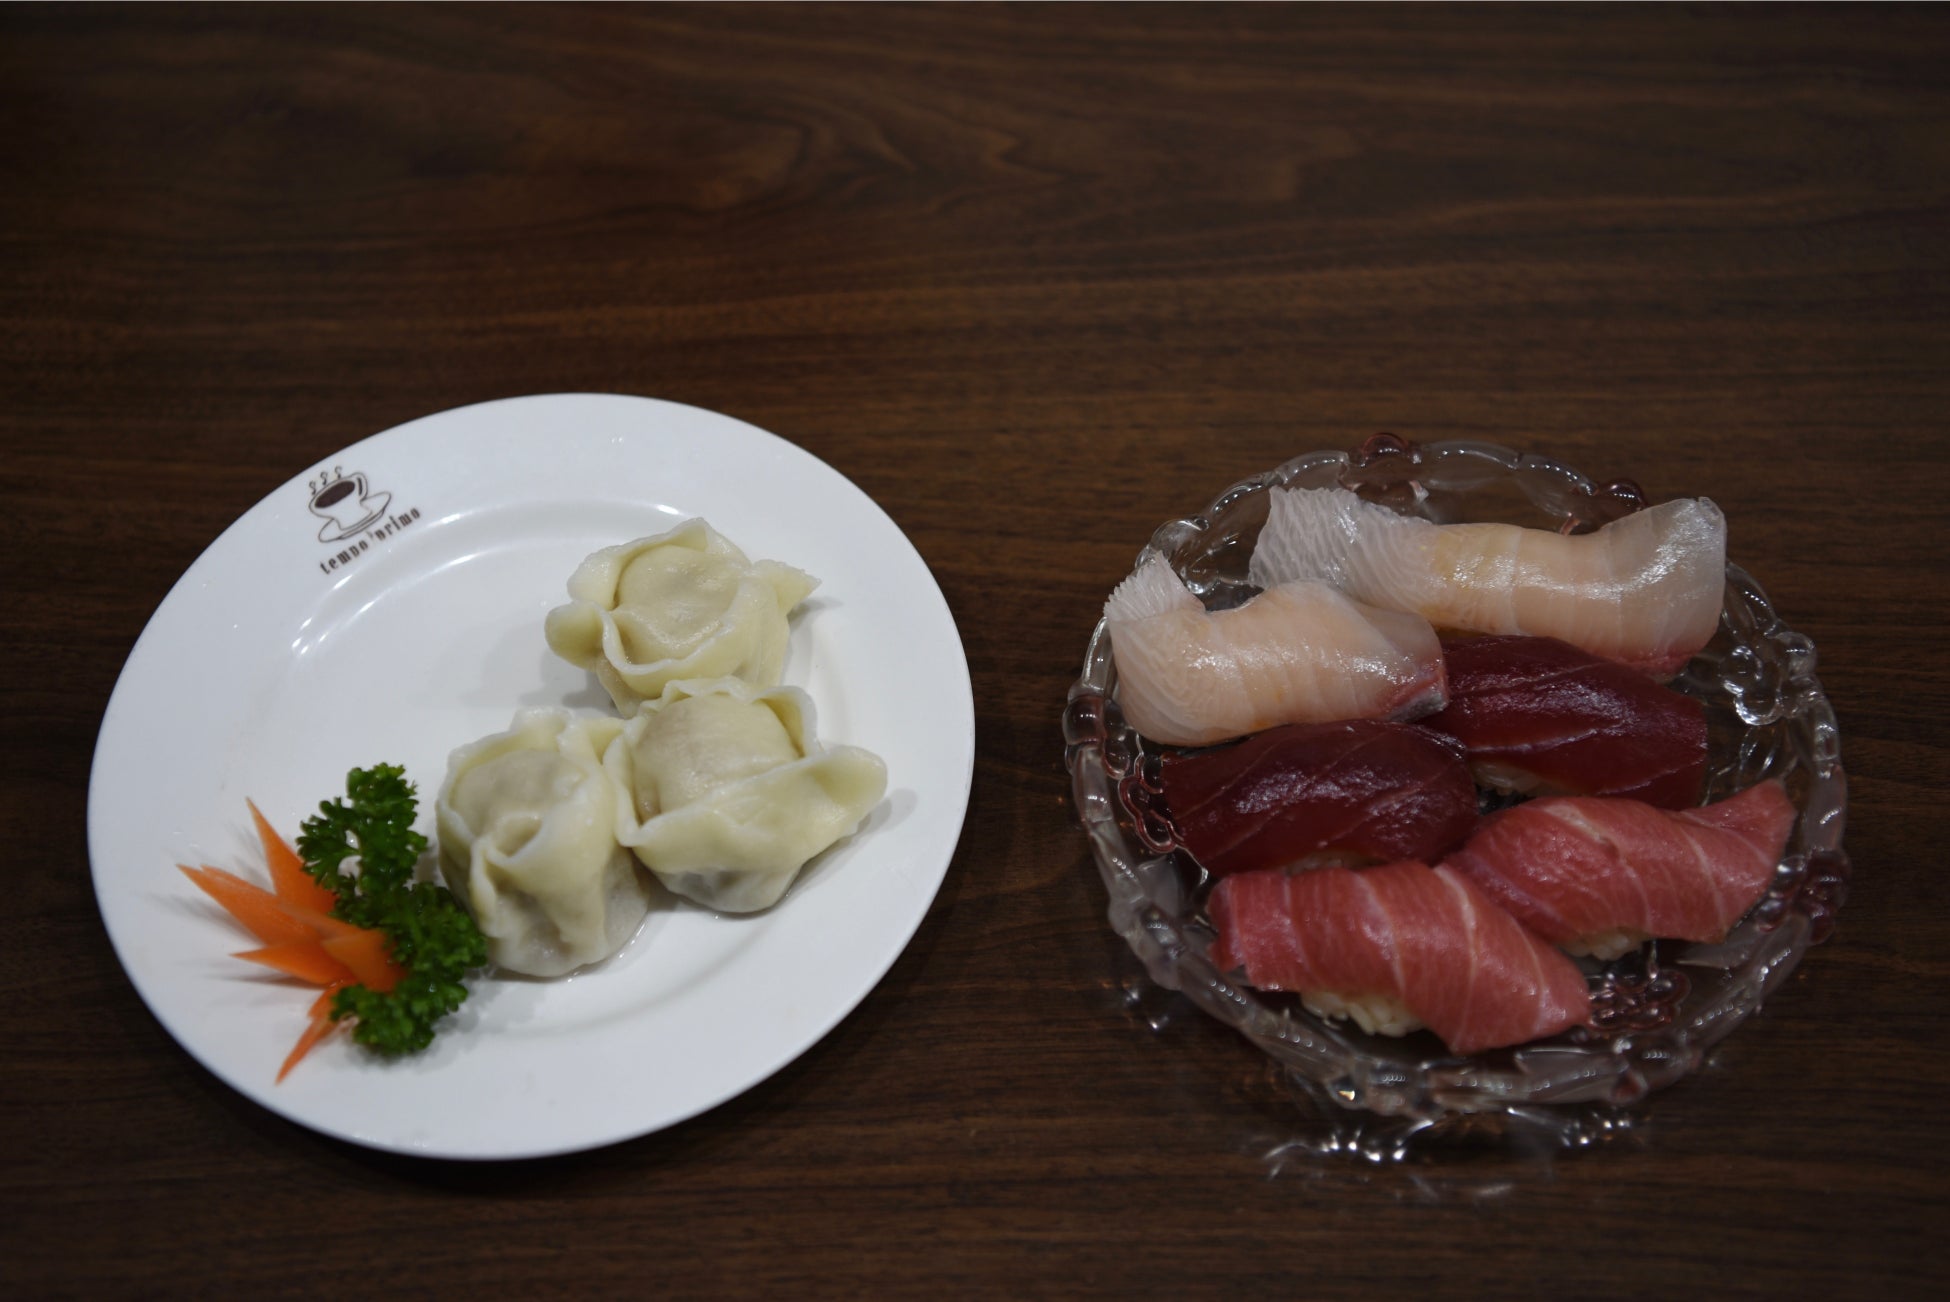 遼寧料理を日本で満喫　グルメイベント「遼寧の味」「餃子とすしのコラボ」 遼寧料理で日中交流